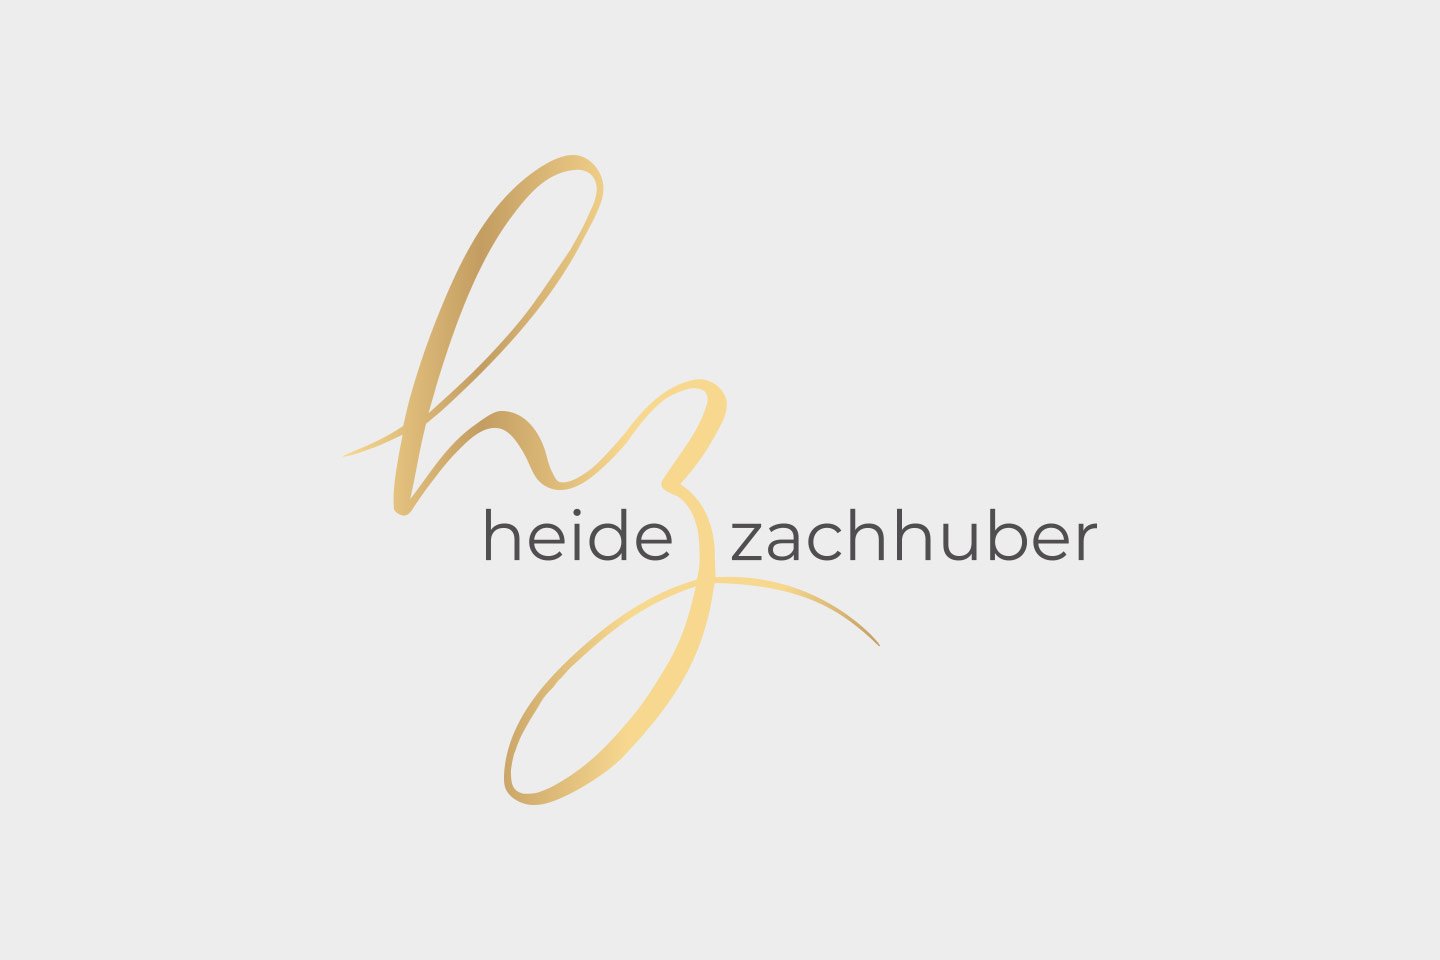 Heide Zachhuber Logodesign